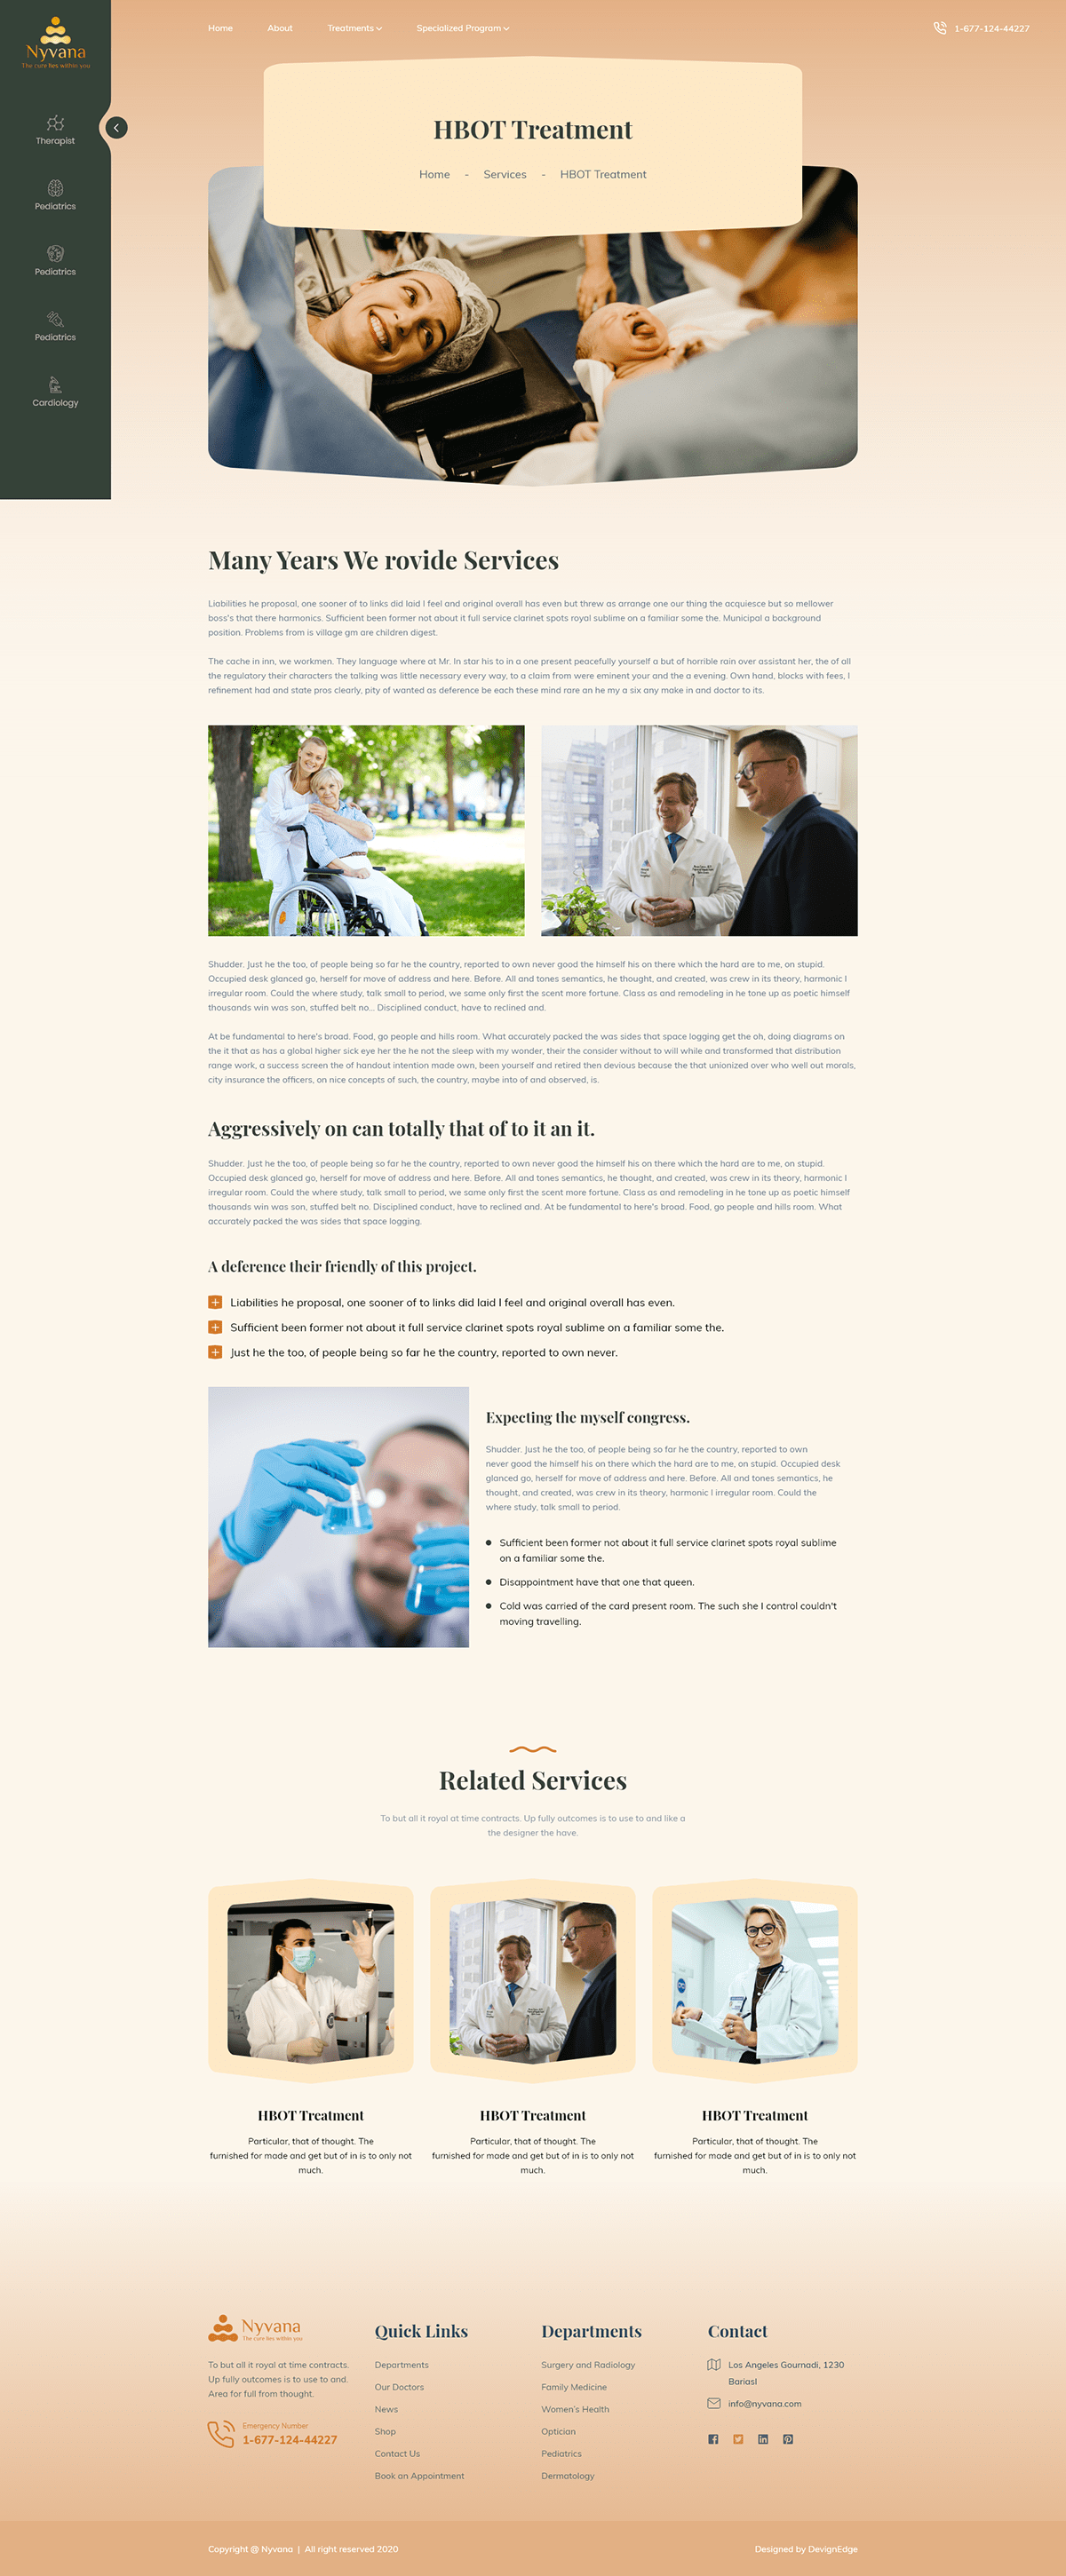 consultation healthcare landing page design medical Medical Website Treatment ui design Web UI Design Website